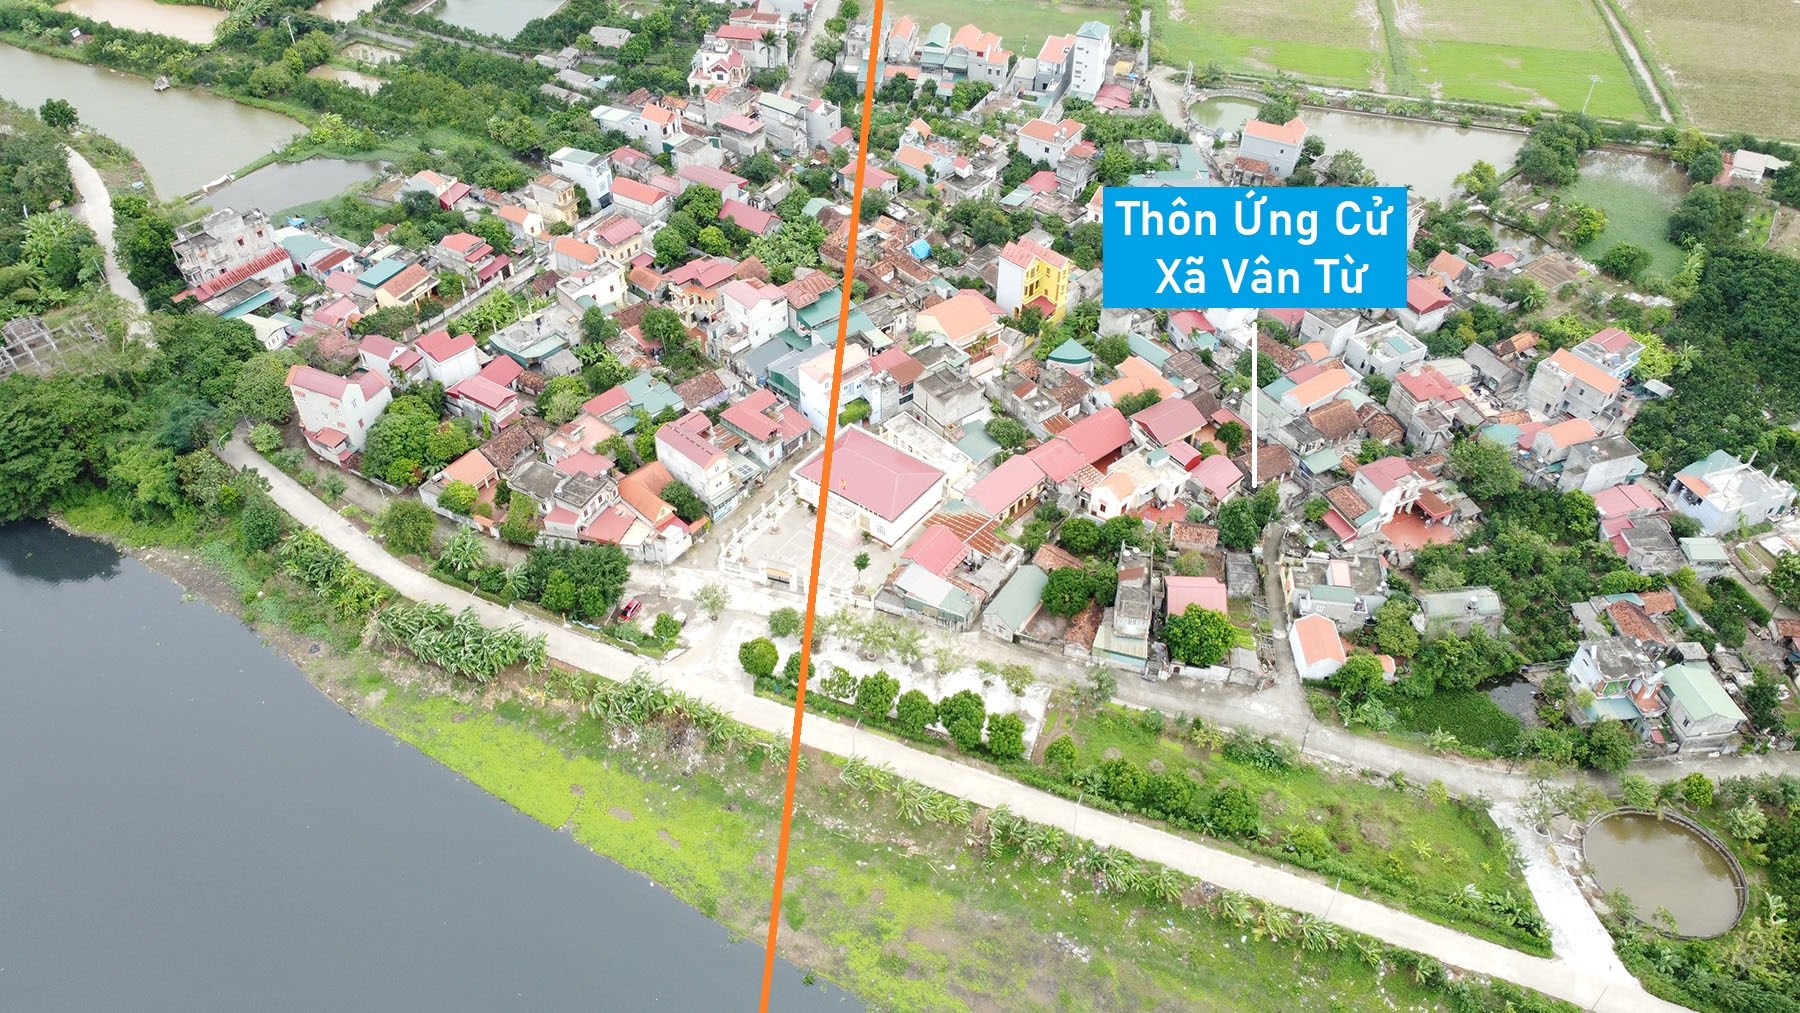 Toàn cảnh vị trí quy hoạch cầu vượt sông Nhuệ qua Phú Xuyên, Hà Nội trên tuyến cao tốc Tây Bắc - QL5